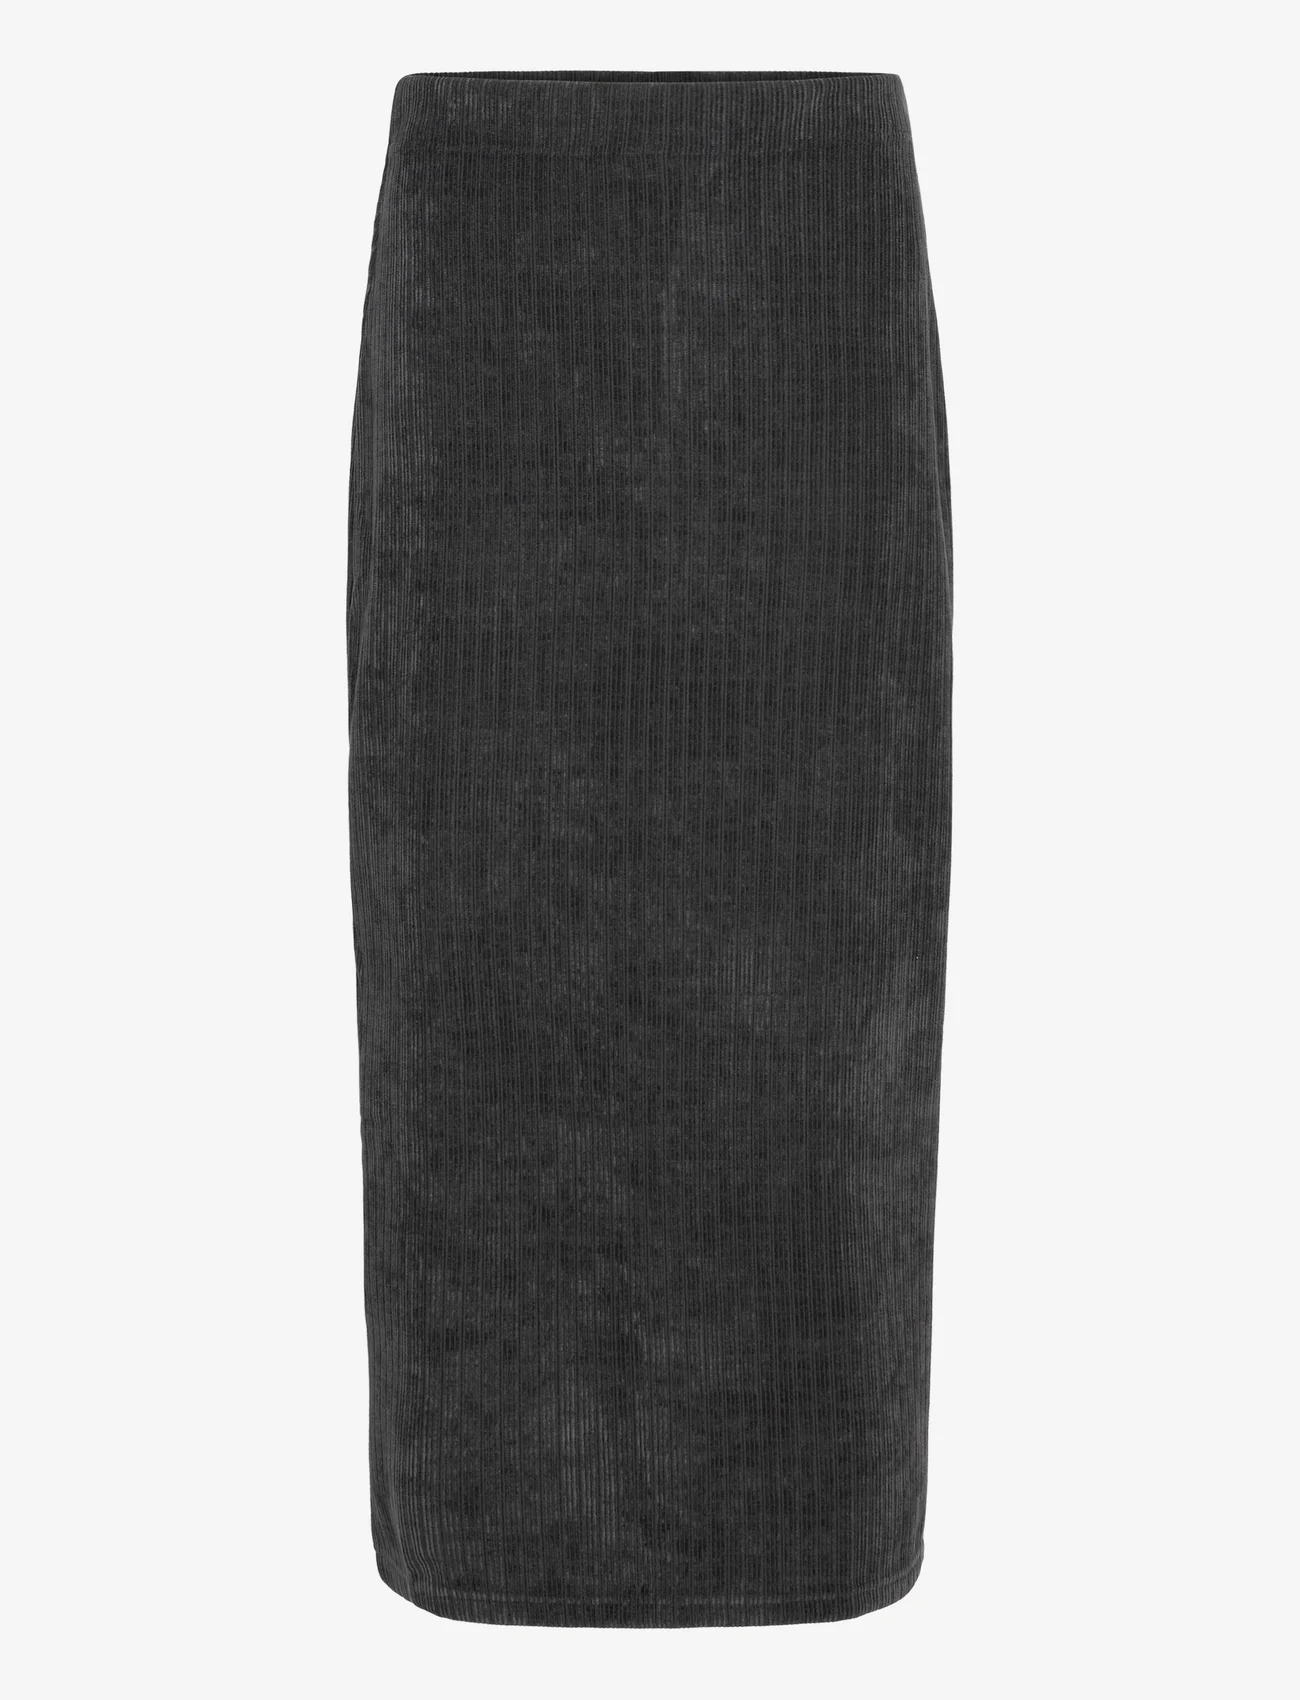 Résumé - VivienneRS Skirt - maxi nederdele - charcoal - 0